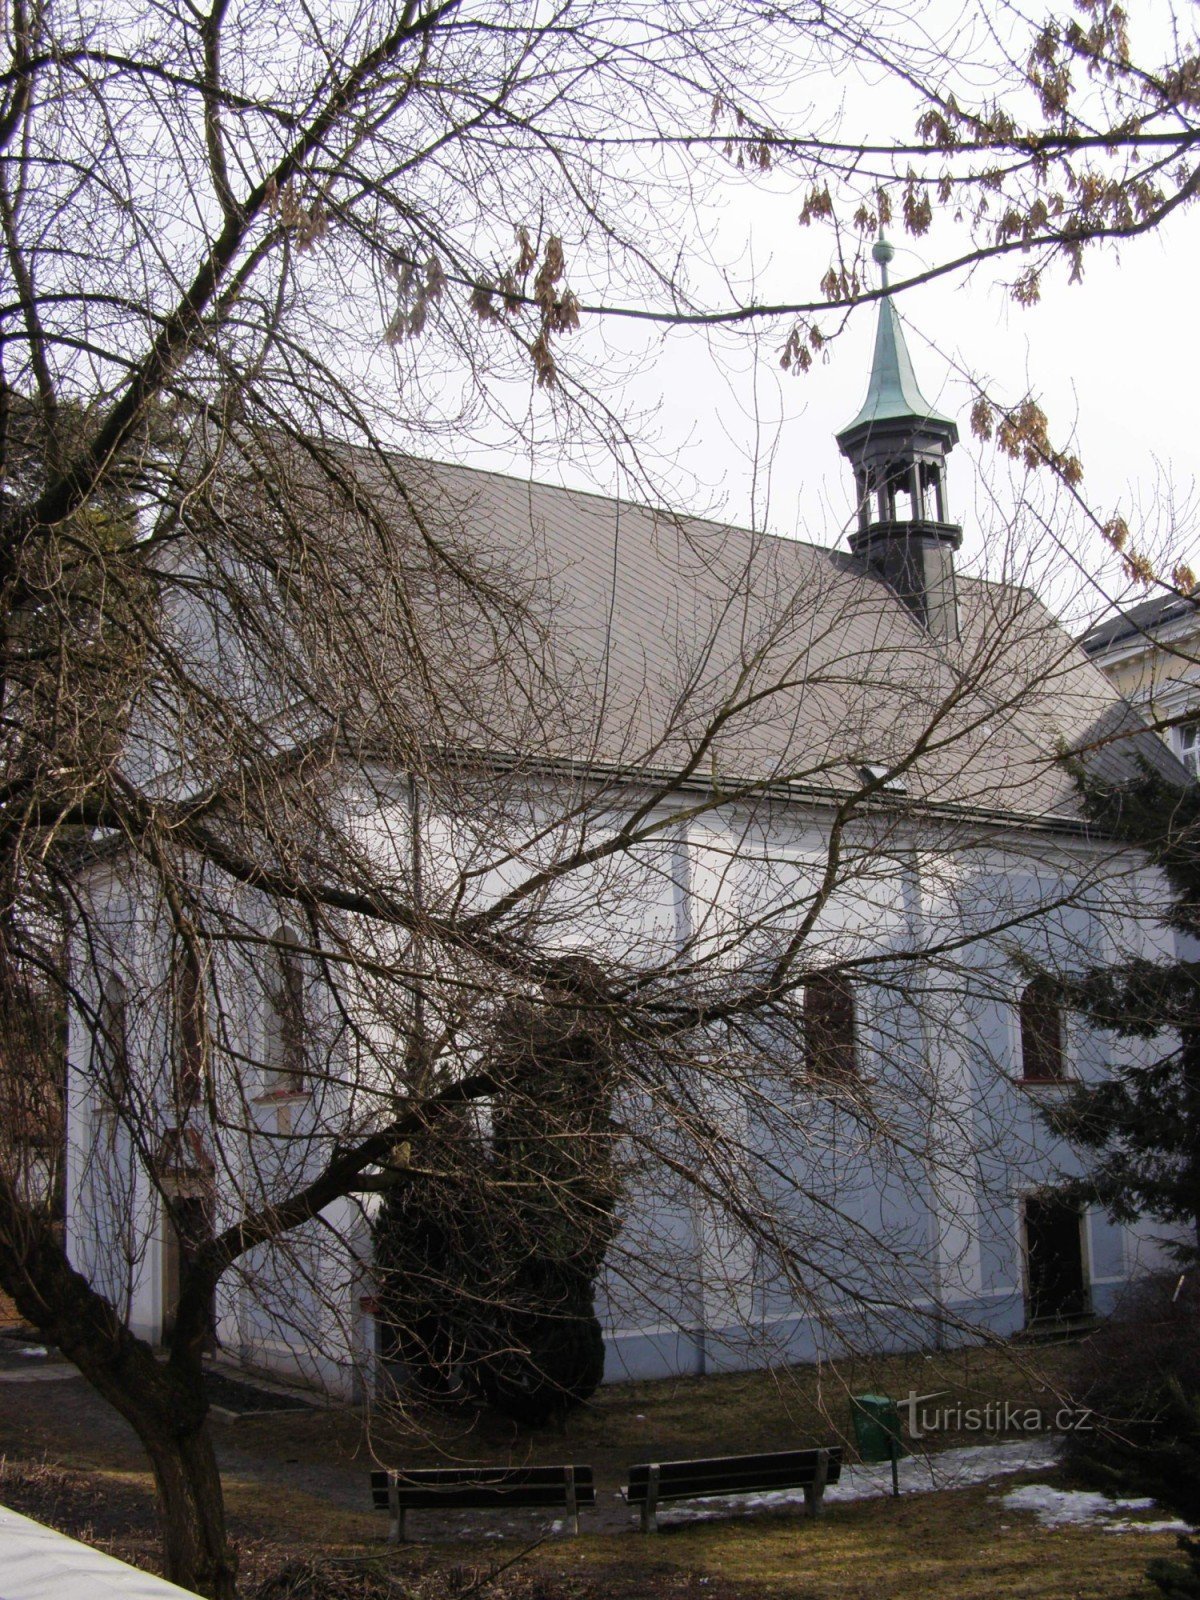 Náchod - église de St. Michaëla